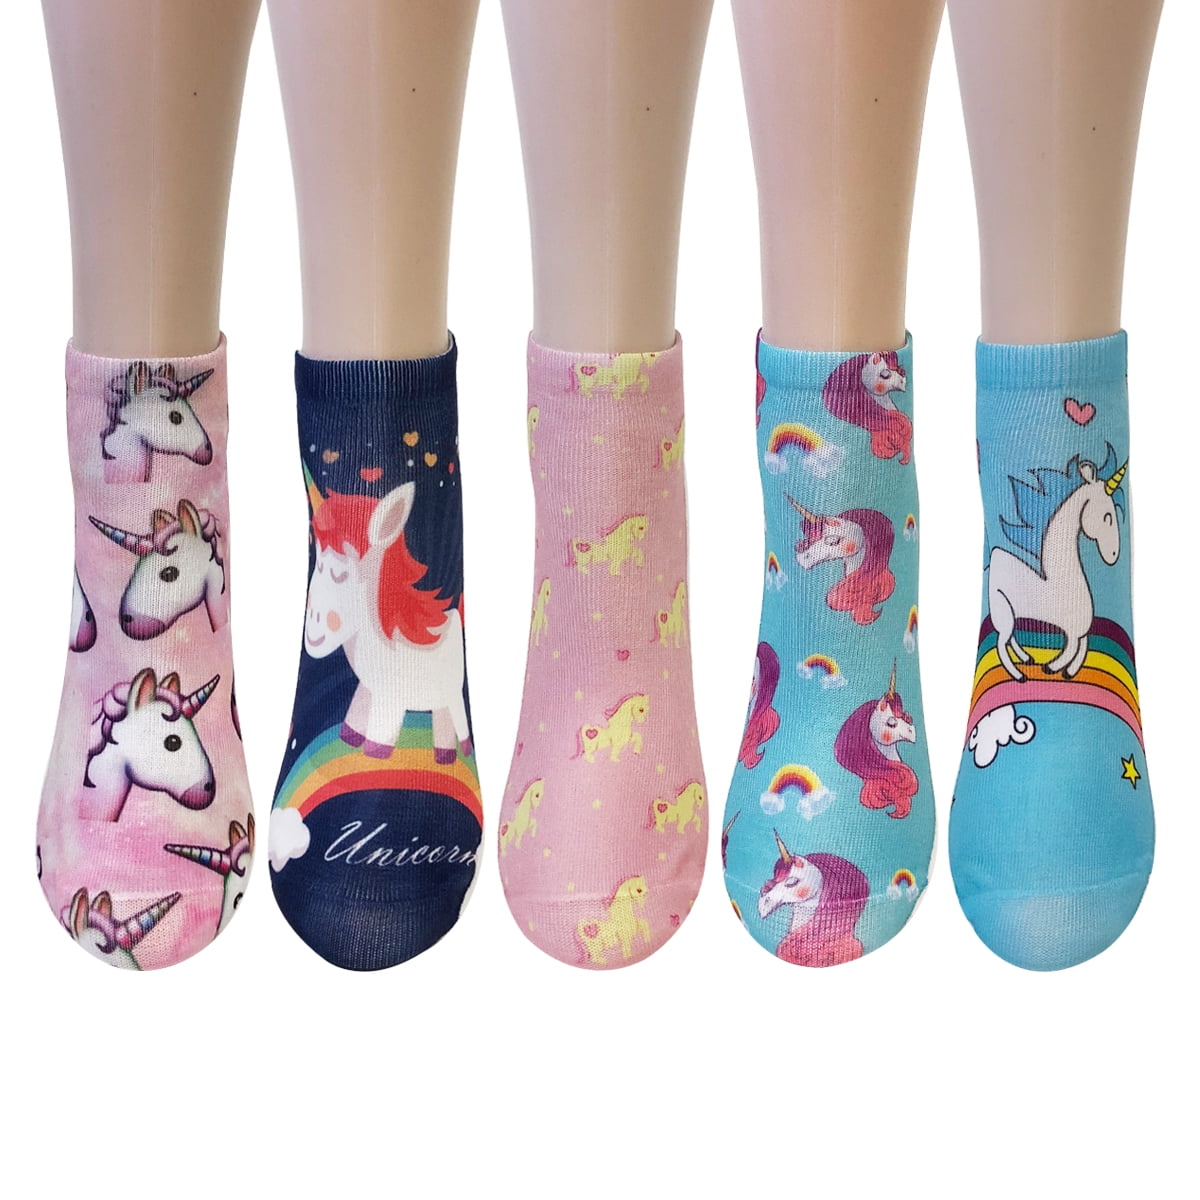 BXzhiri New Popular Funny Unisex Short Socks Novelty 3D Cat Printed Anklet Socks Casual Socks Women Socks for Flats